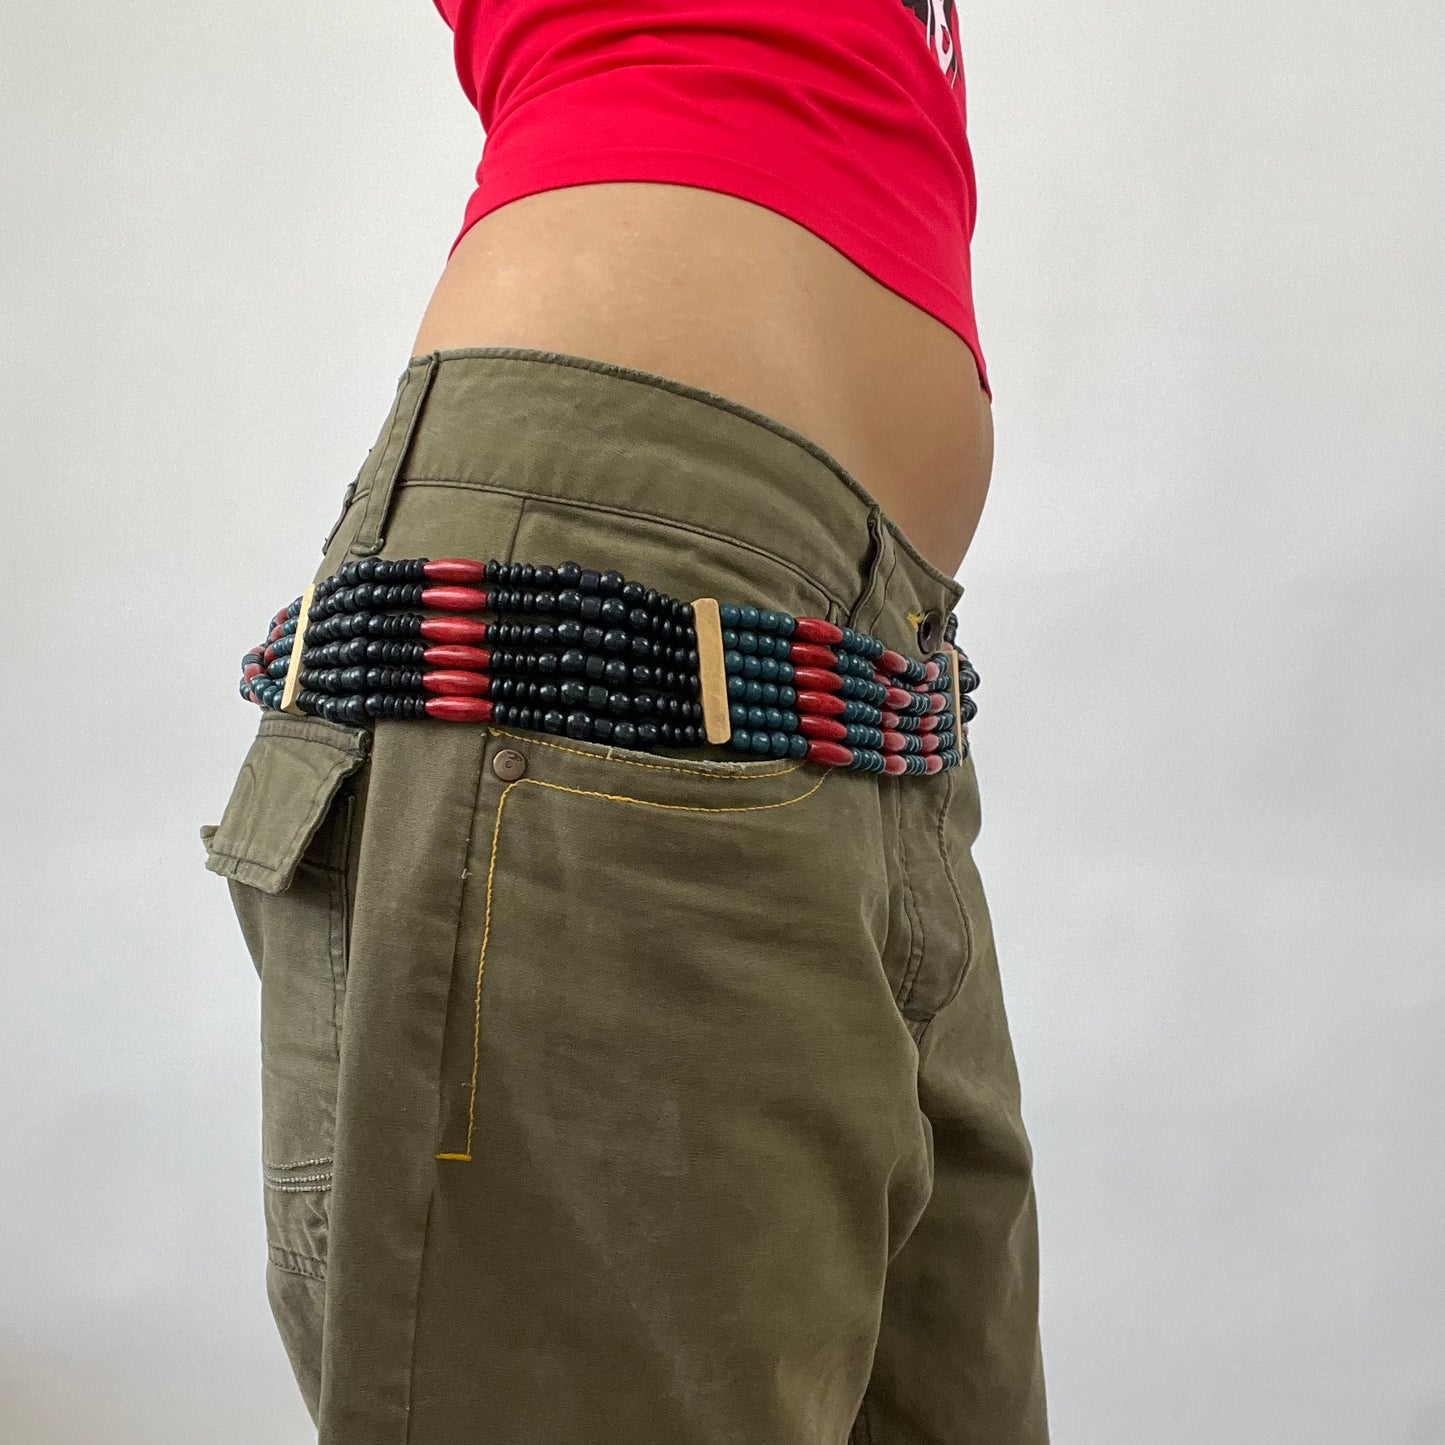 FESTIVAL DROP | beaded belt with tassels